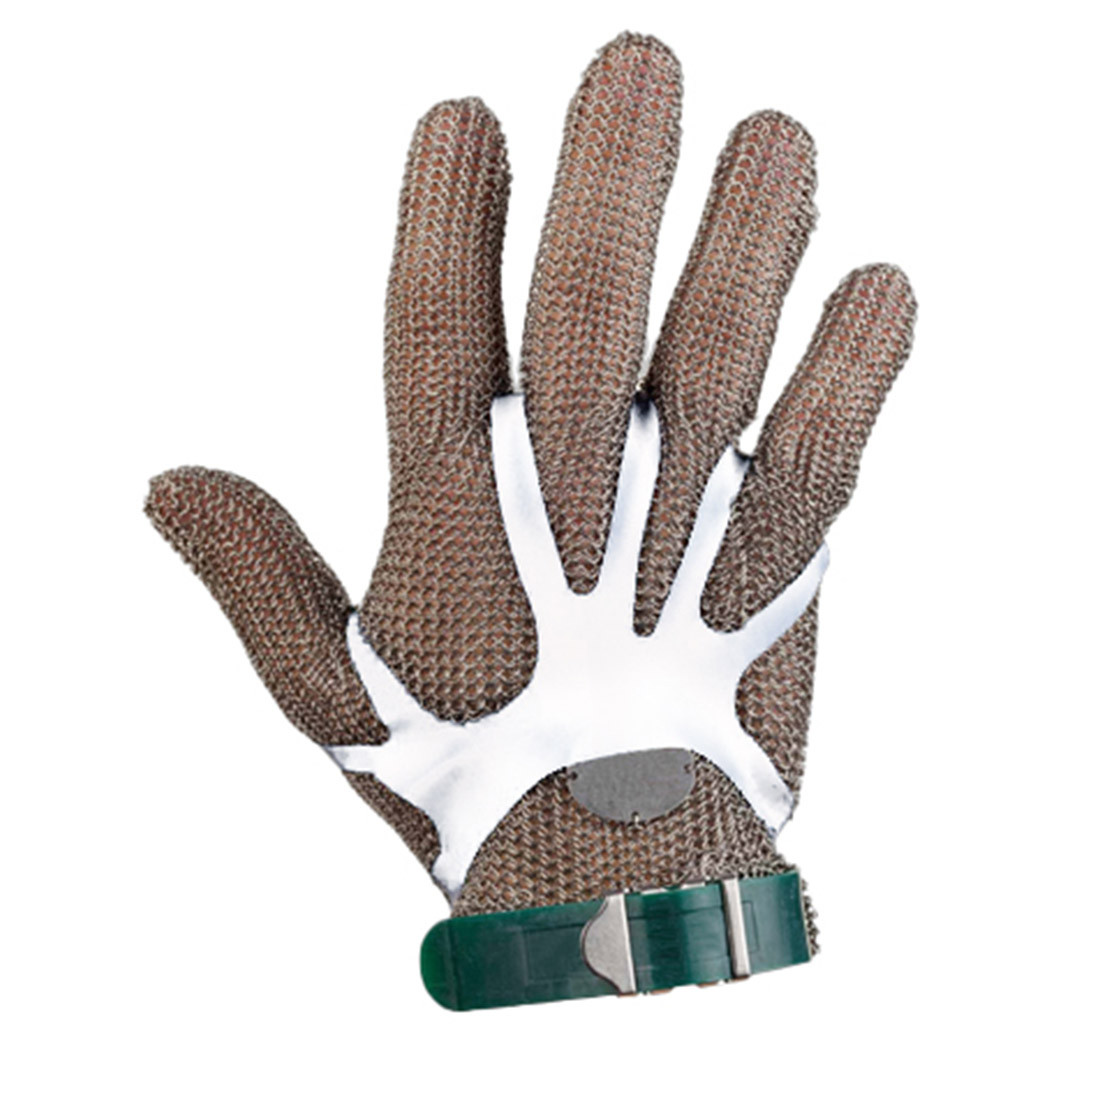 Tendeur de gants - Les équipements de protection individuelle